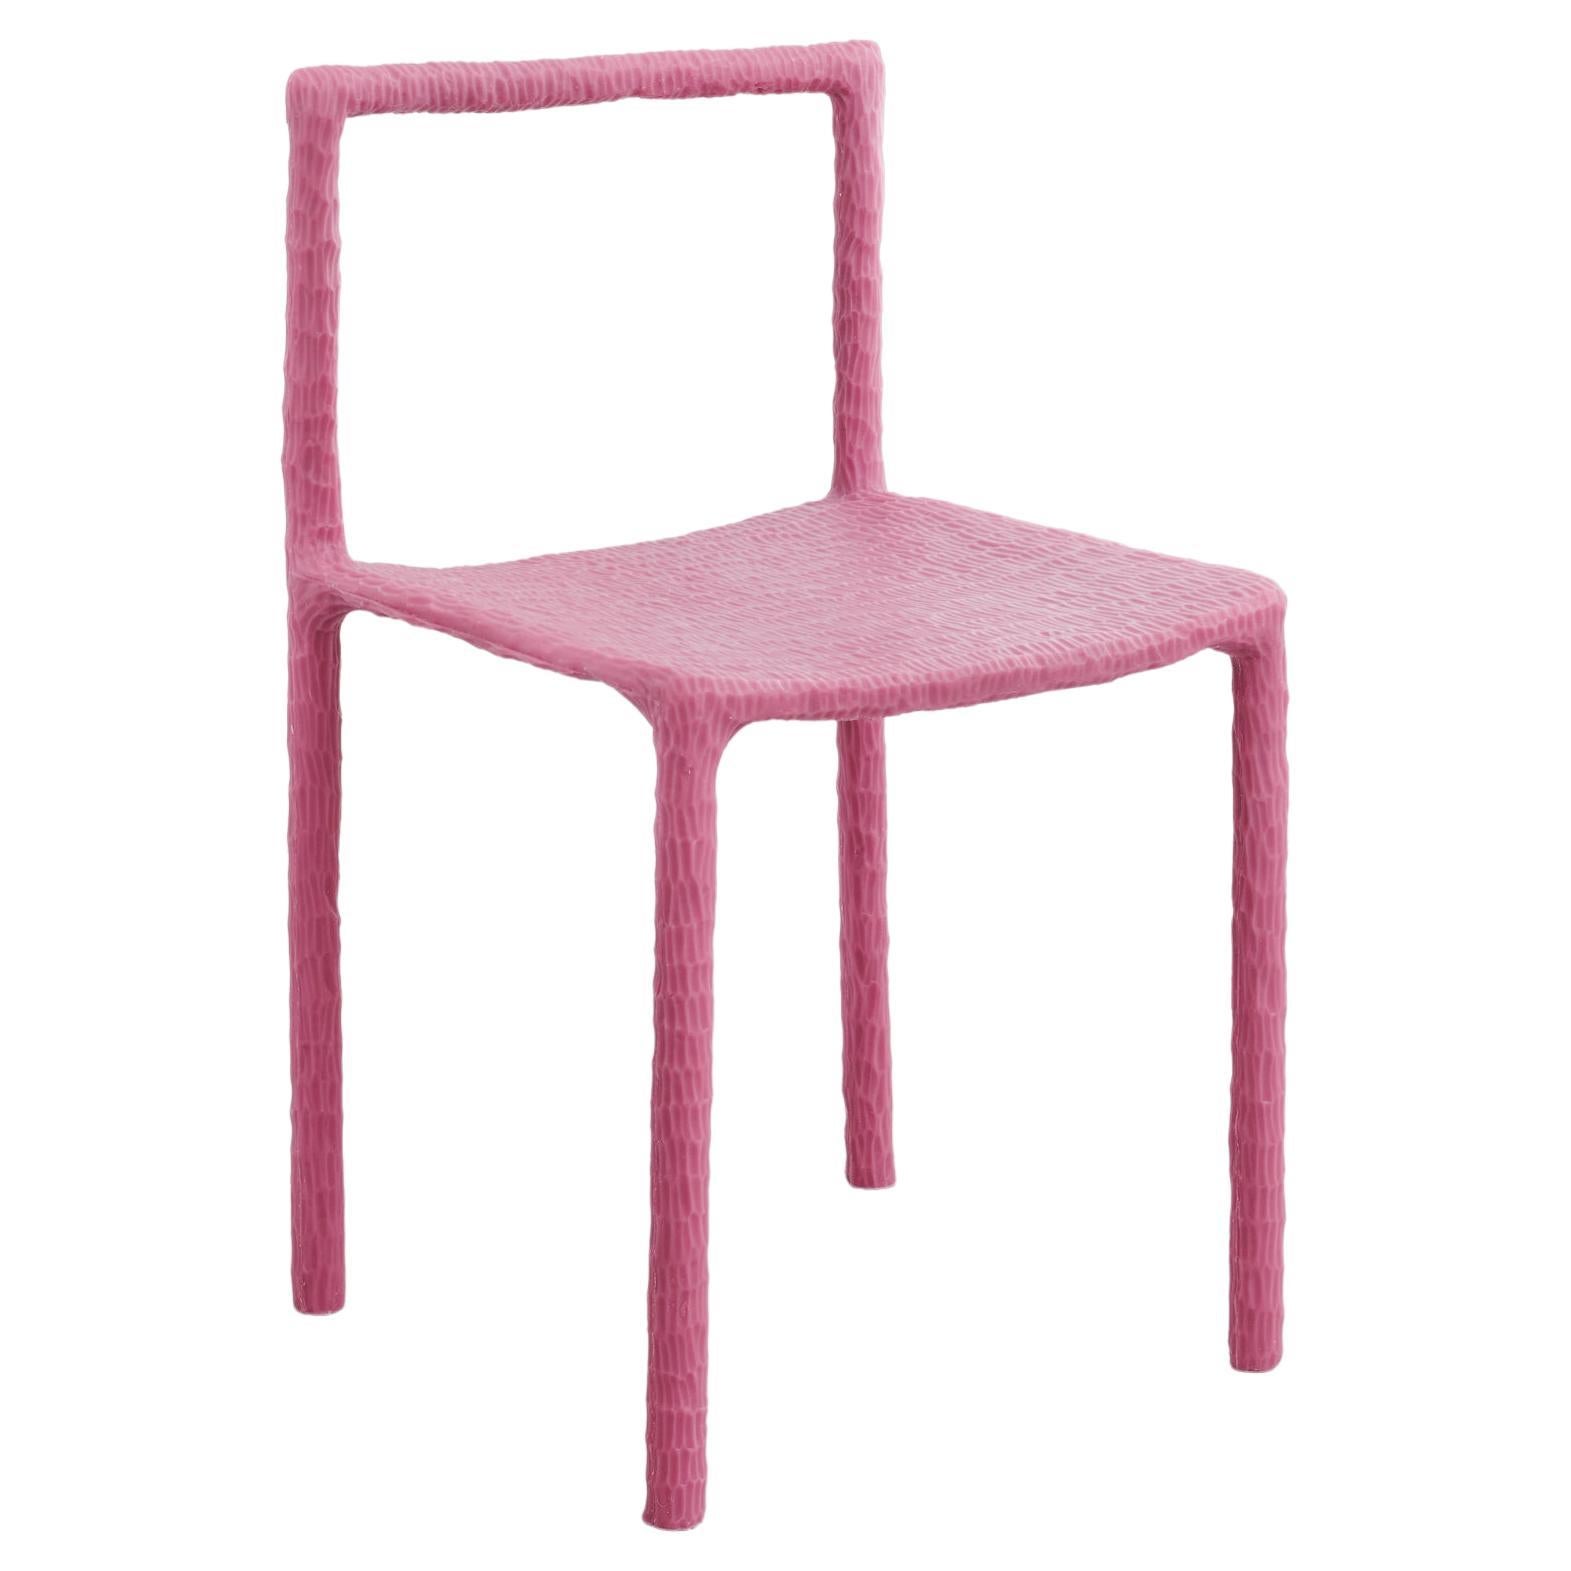 Zeitgenössischer rosa Stuhl, Minimal von Objekten des häufigen Interesses